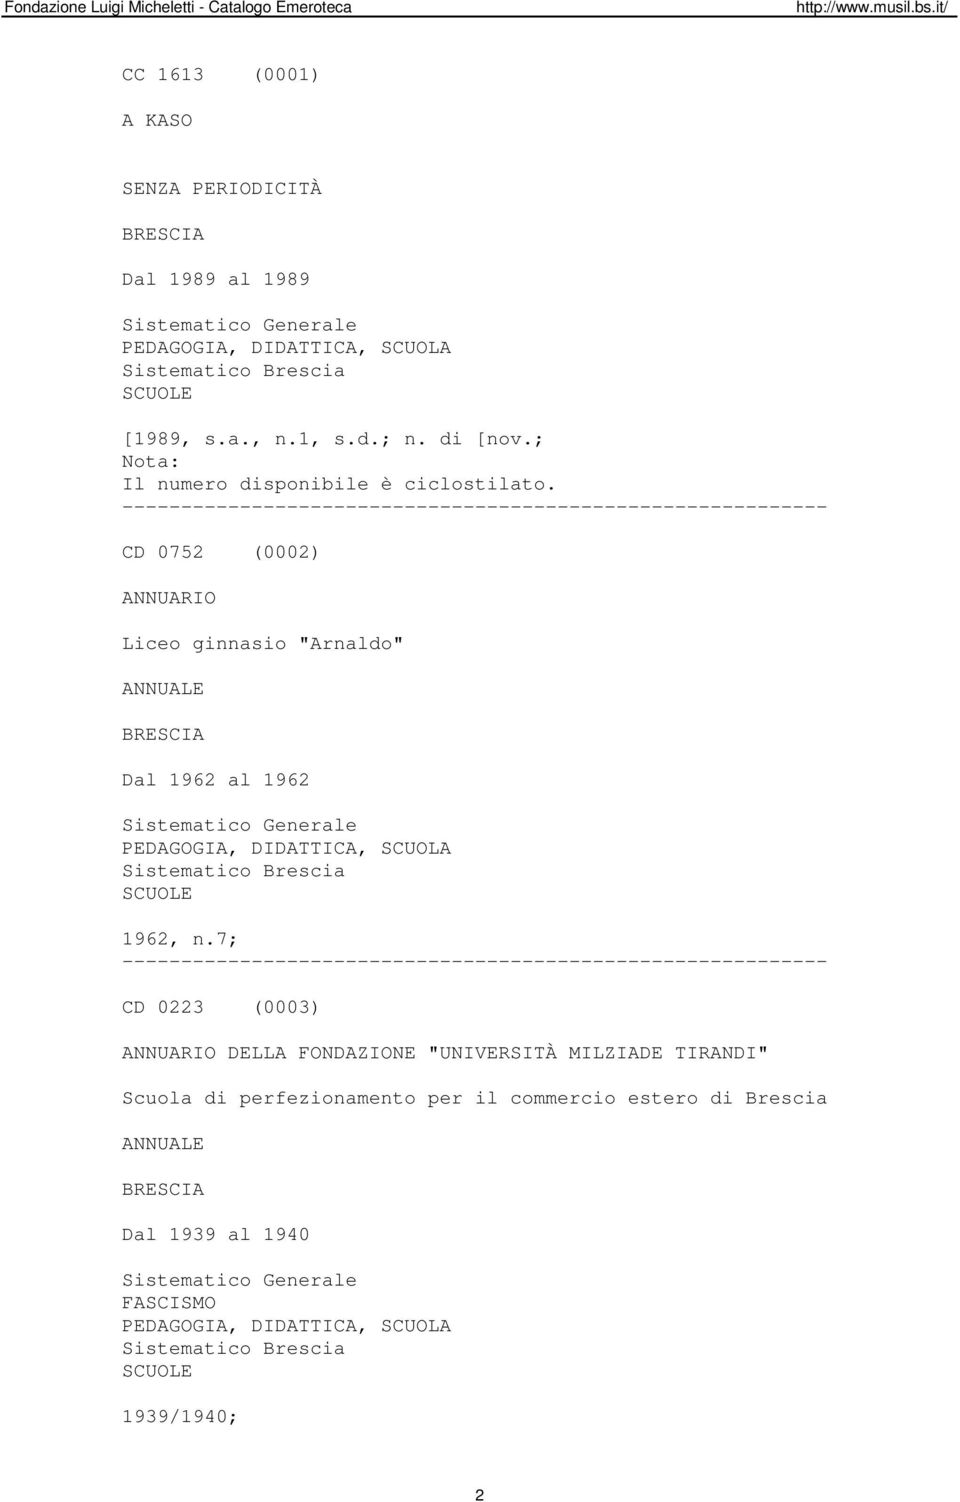 7; CD 0223 (0003) ANNUARIO DELLA FONDAZIONE "UNIVERSITÀ MILZIADE TIRANDI" Scuola di